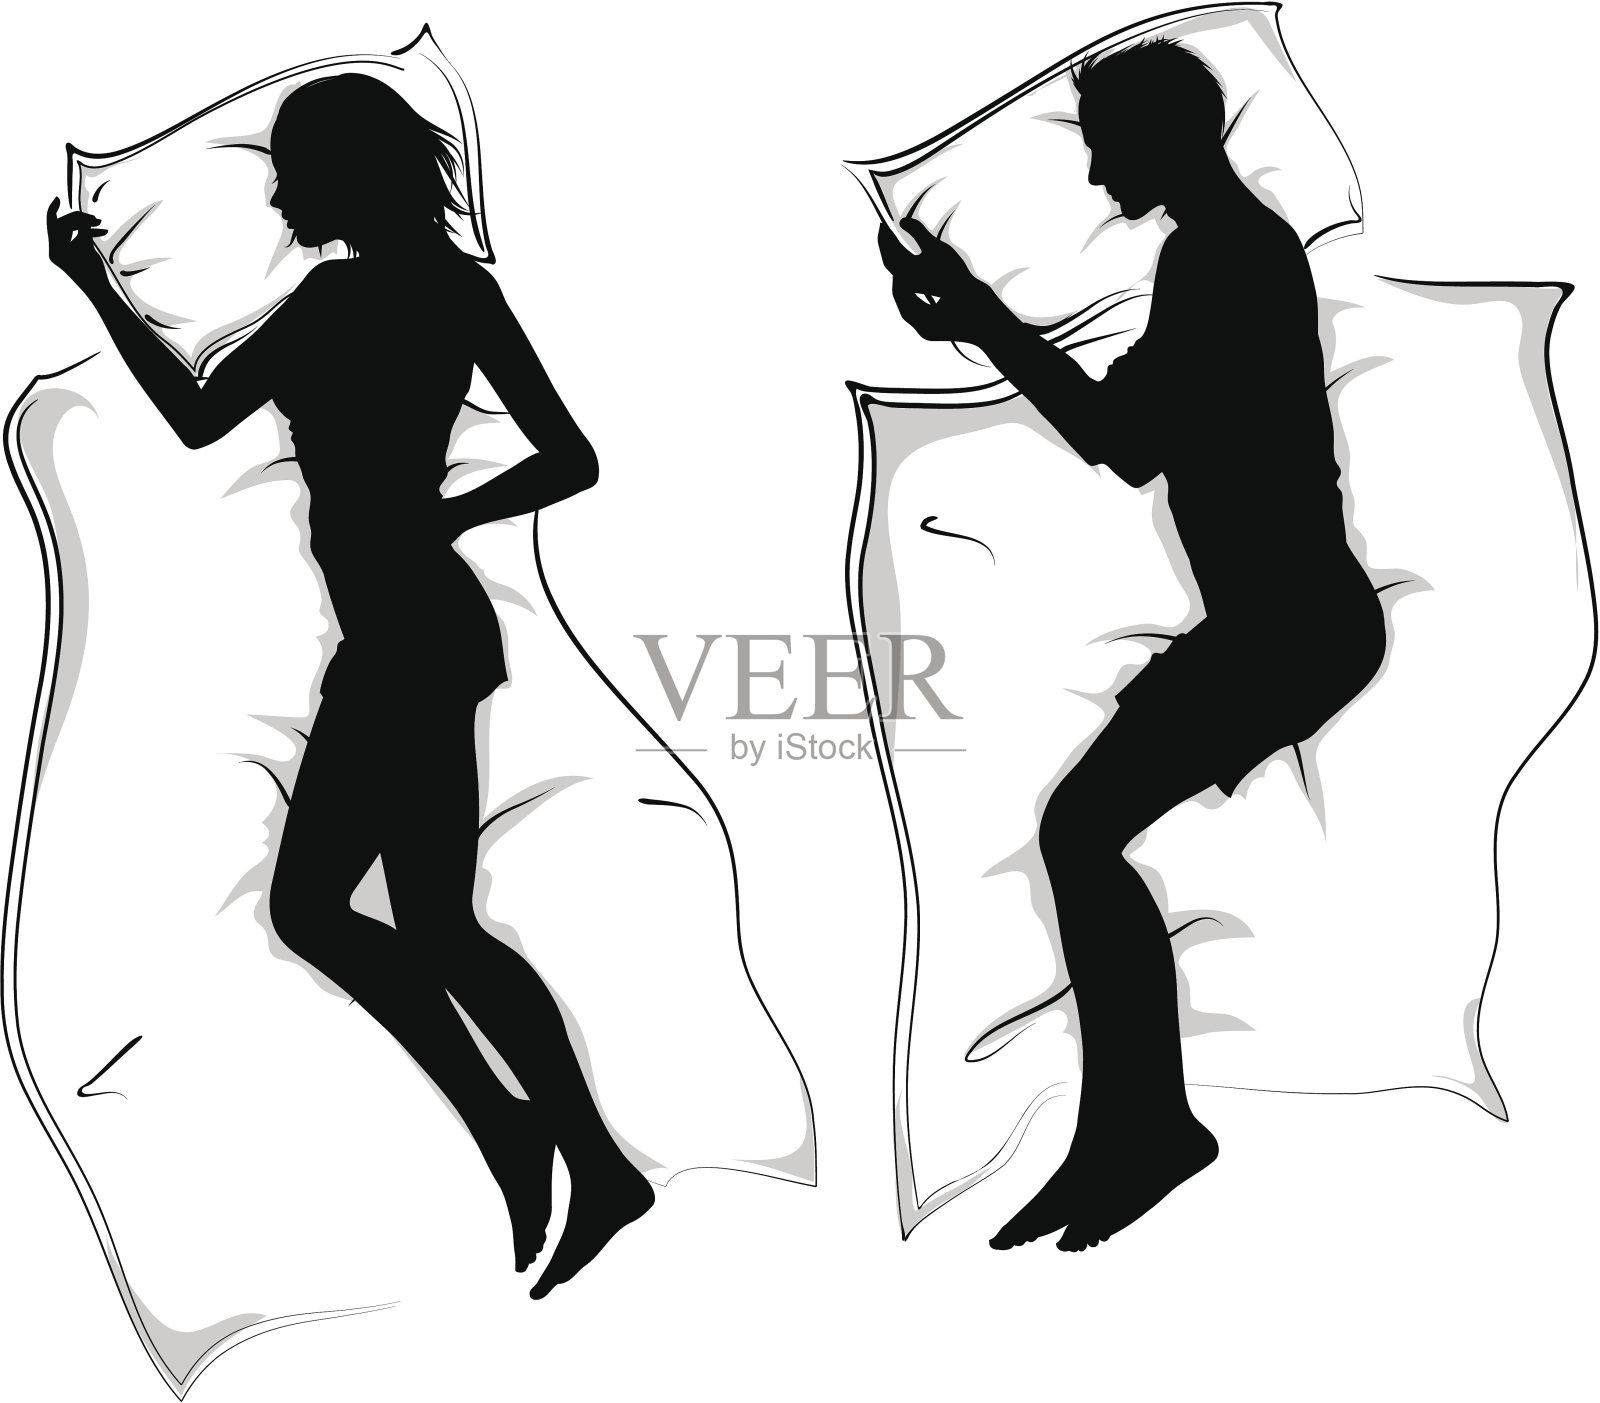 躺在床上睡觉的女人和男人的剪影插画图片素材